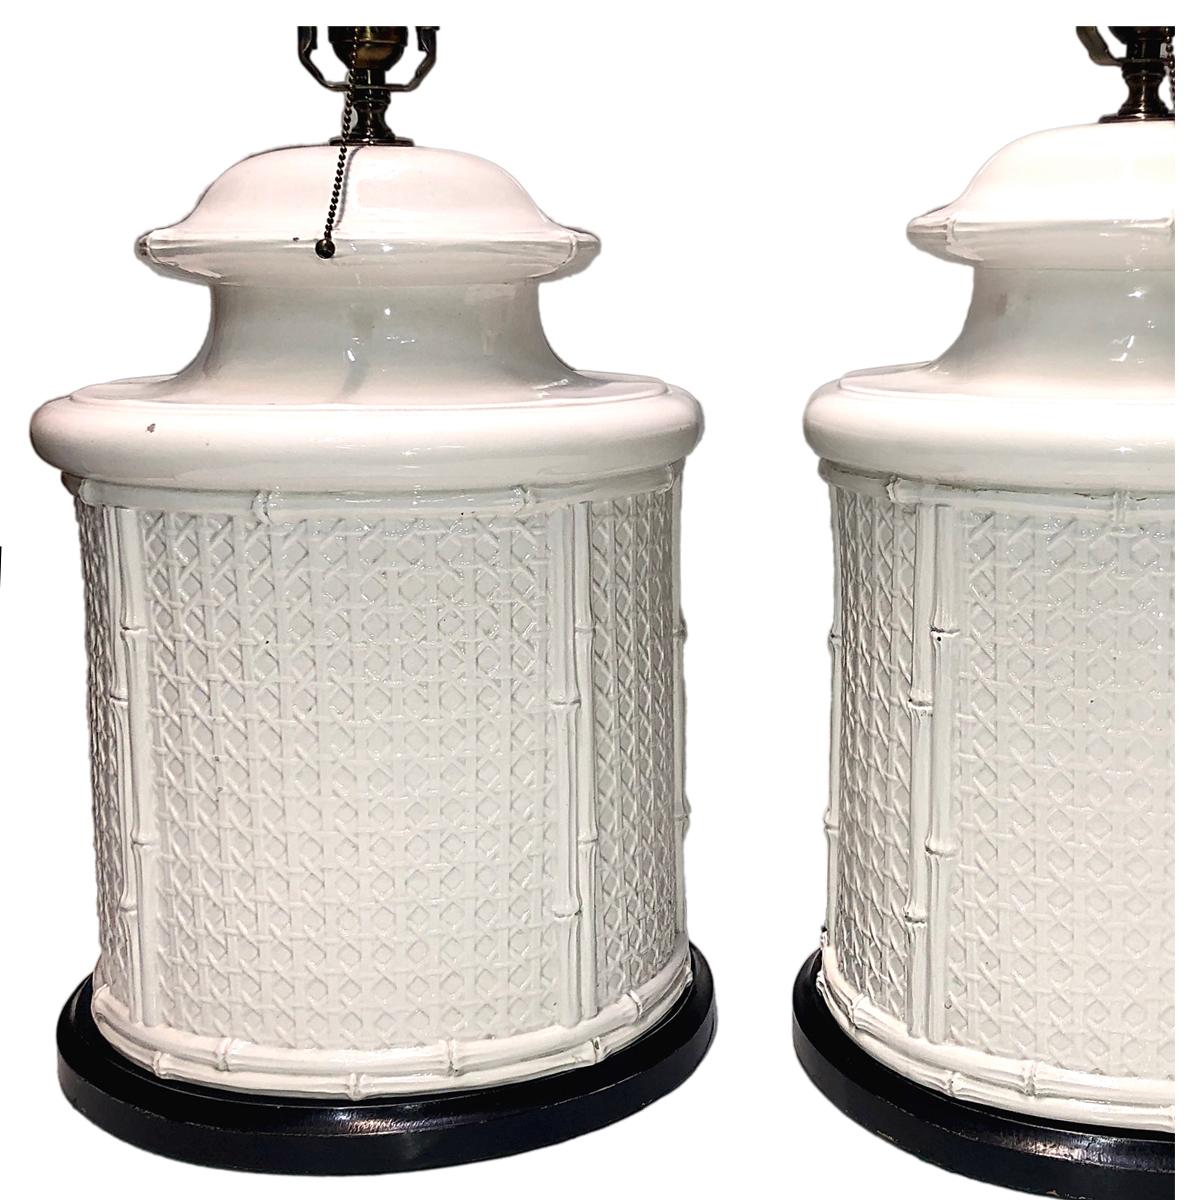 Zwei große französische Porzellanlampen aus den 1950er Jahren in Form von Weiden und Bambus mit ebonisierten Sockeln.

Abmessungen:
Höhe des Körpers 19